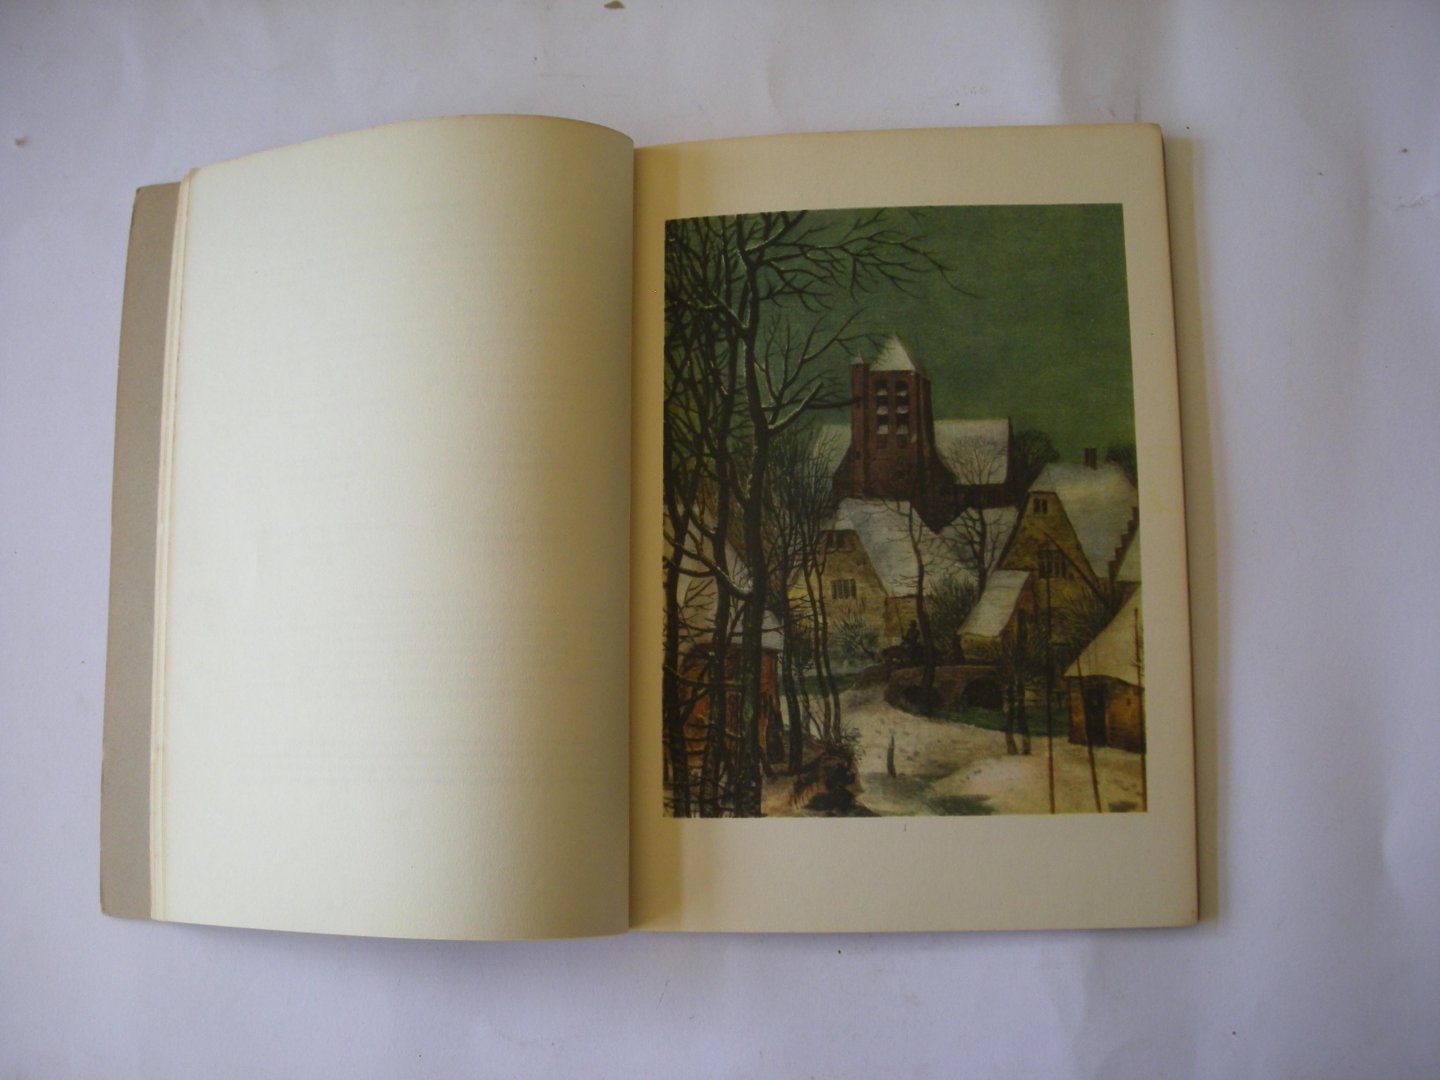 Manteuffel, Kurt Zoege von, Einletung. - Pieter BruegHel - Landschaften.  Zehn farbige Tafeln und funf Abbildungen im Text